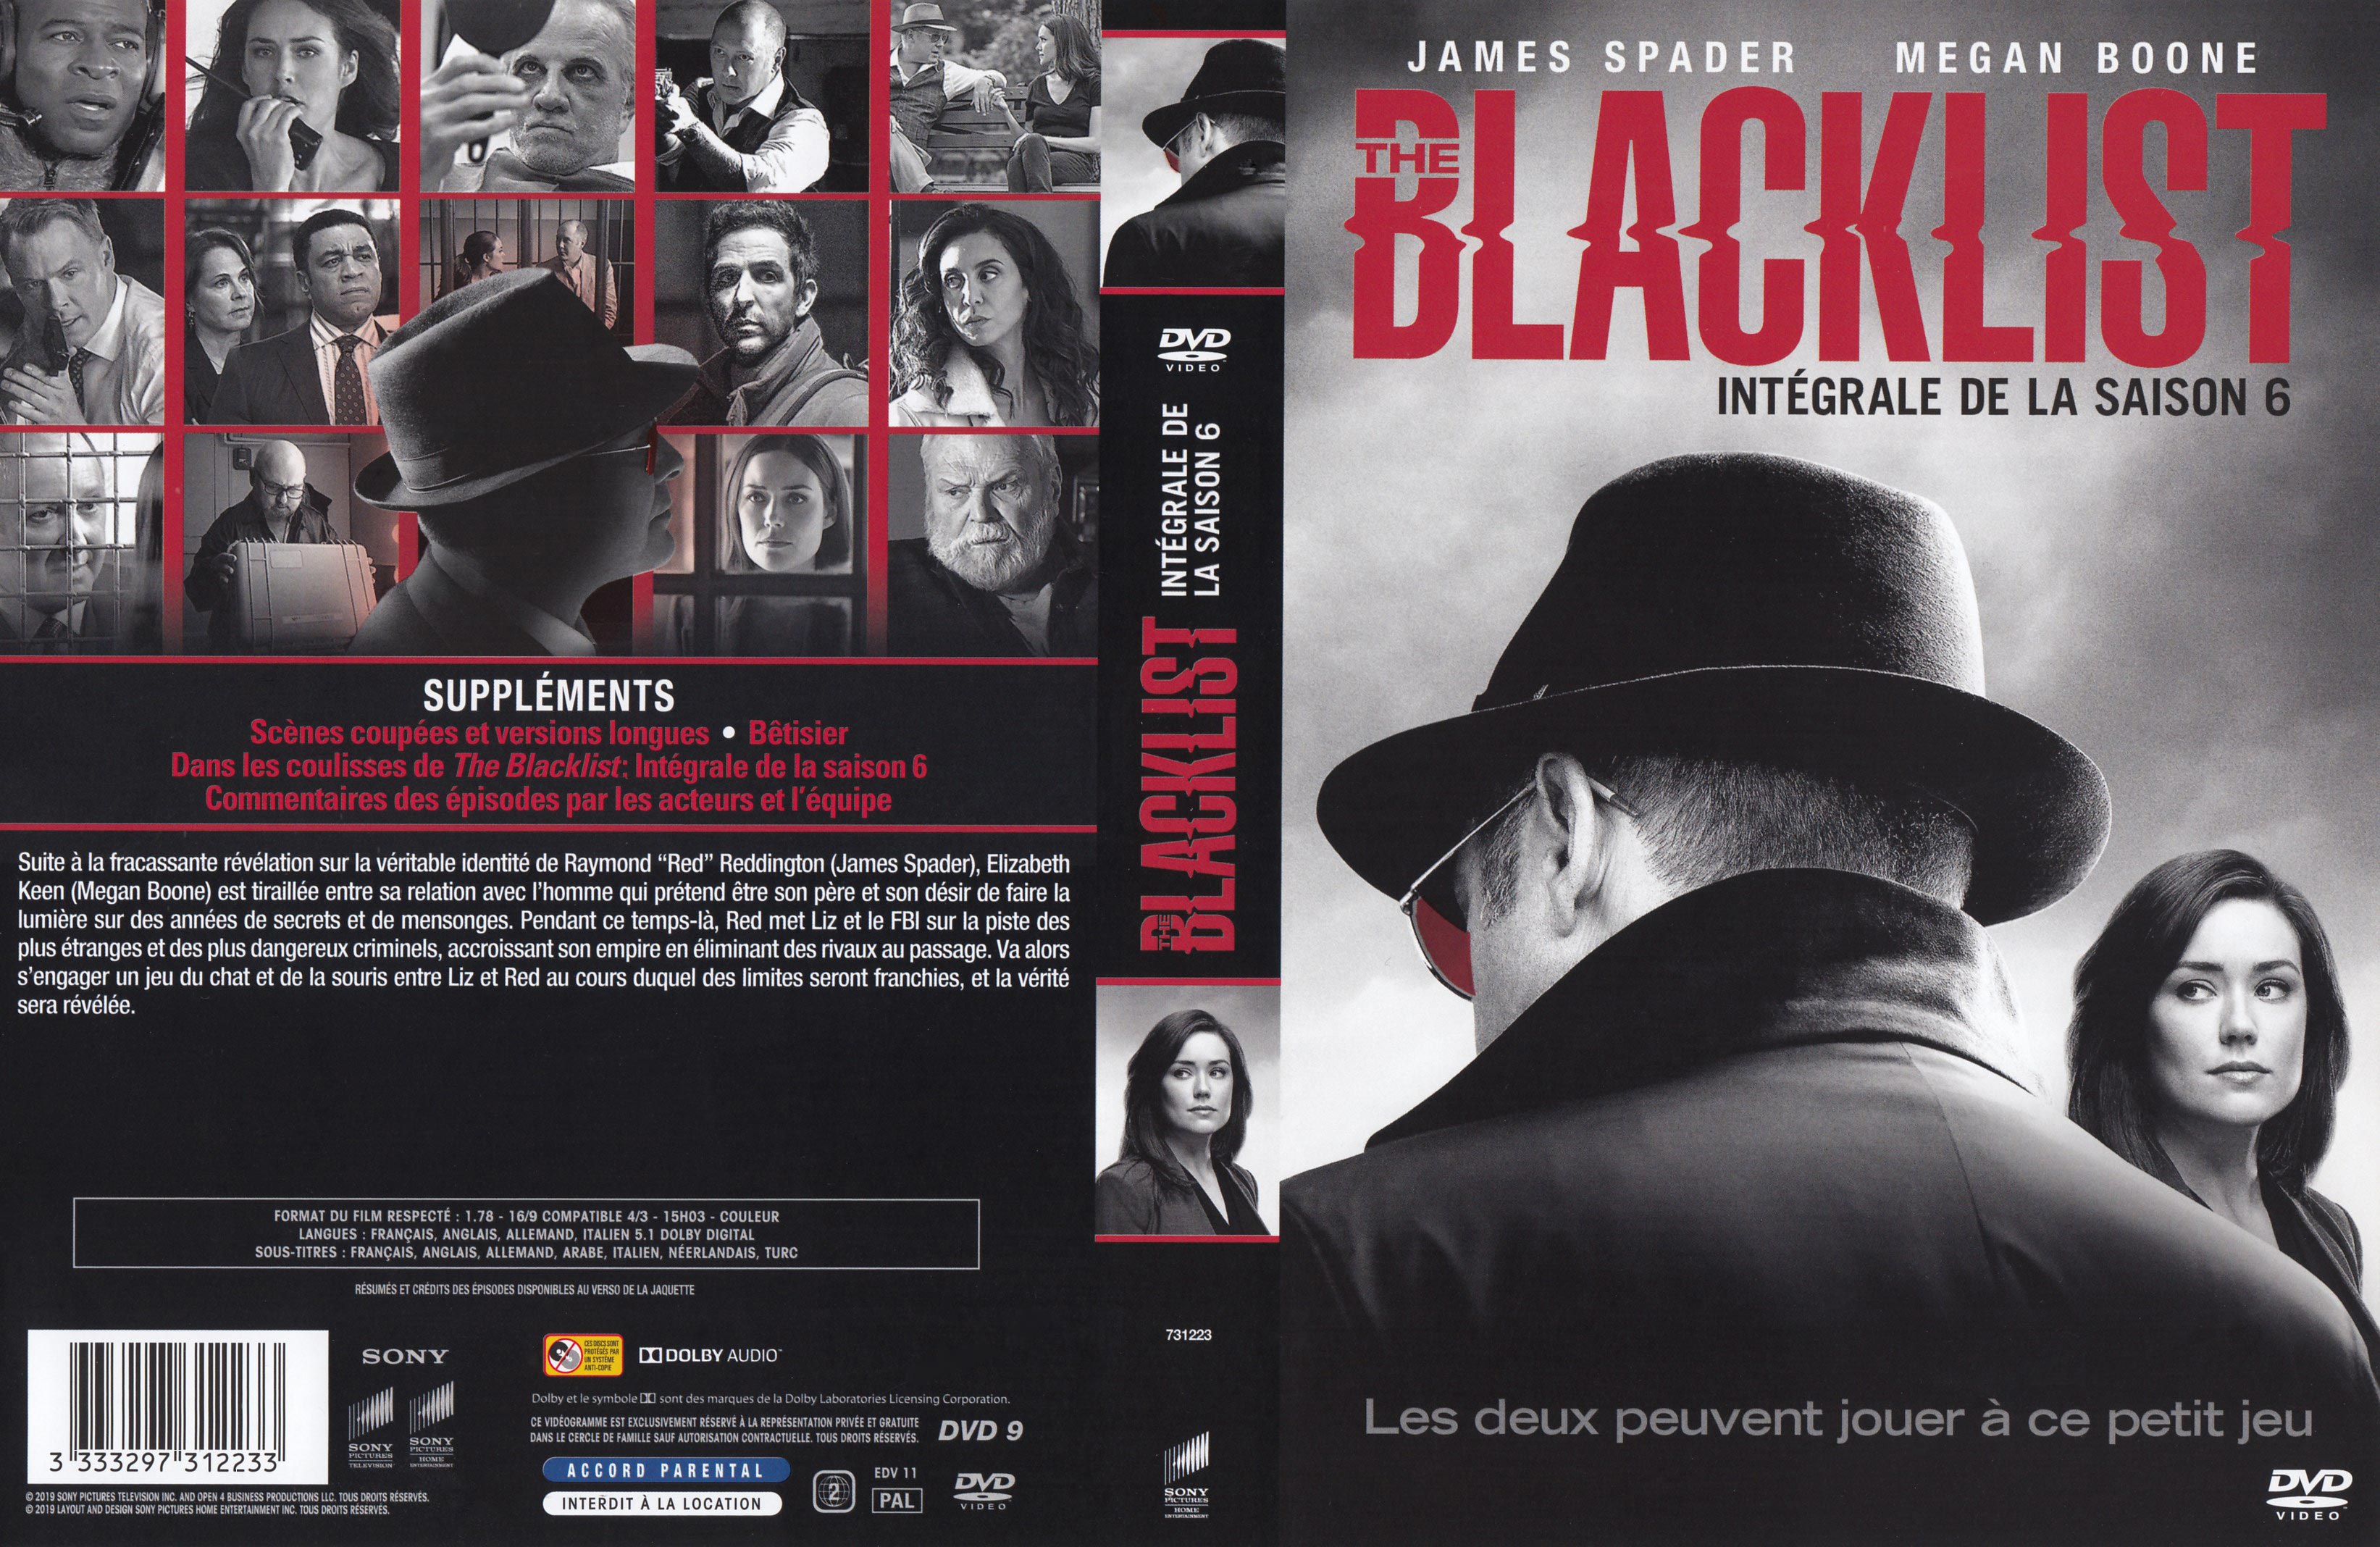 Jaquette DVD Blacklist Saison 6